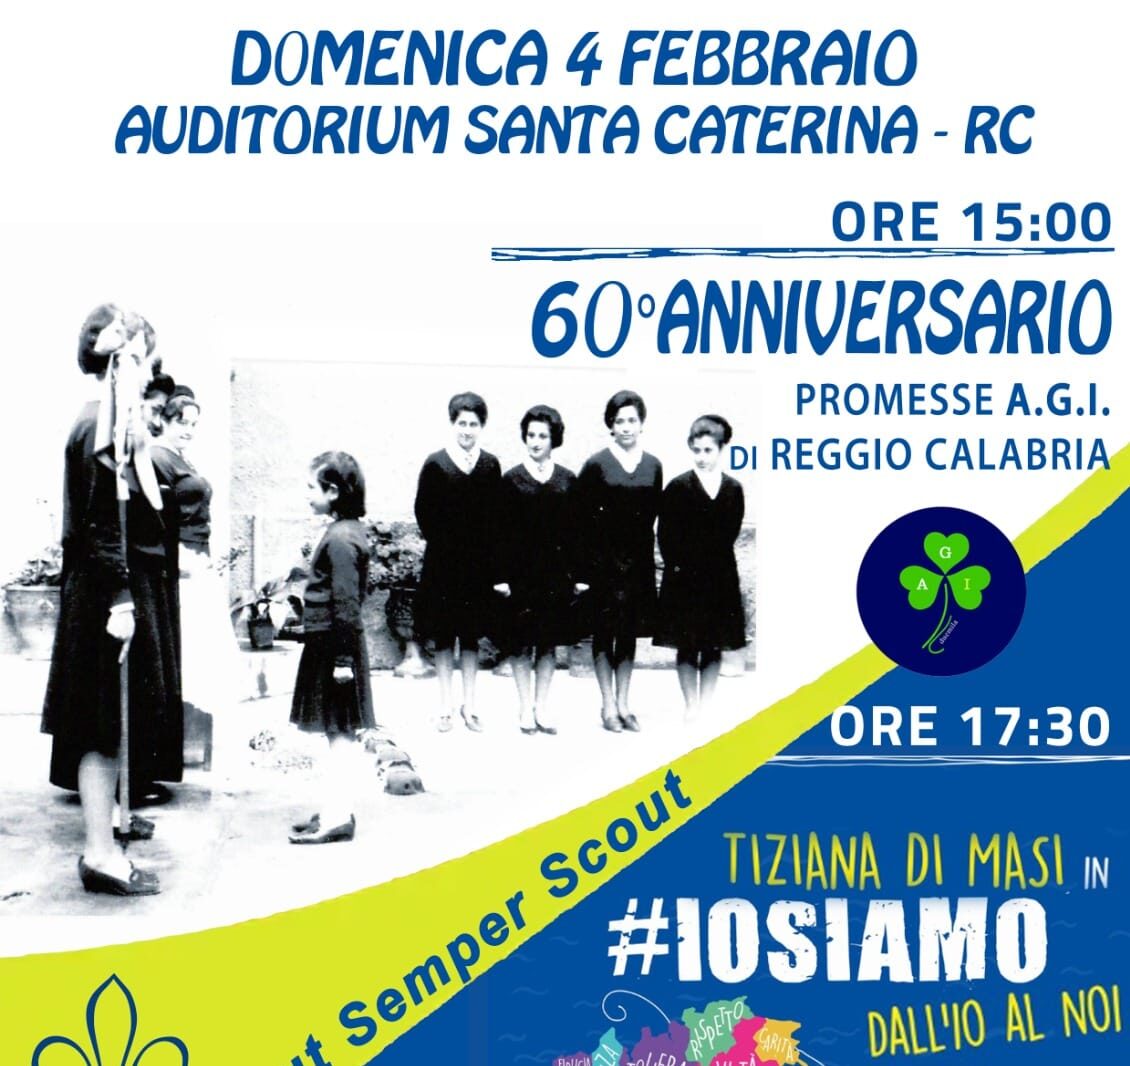 Evento per il 60° anniversario delle promesse A.G.I di Reggio Calabria